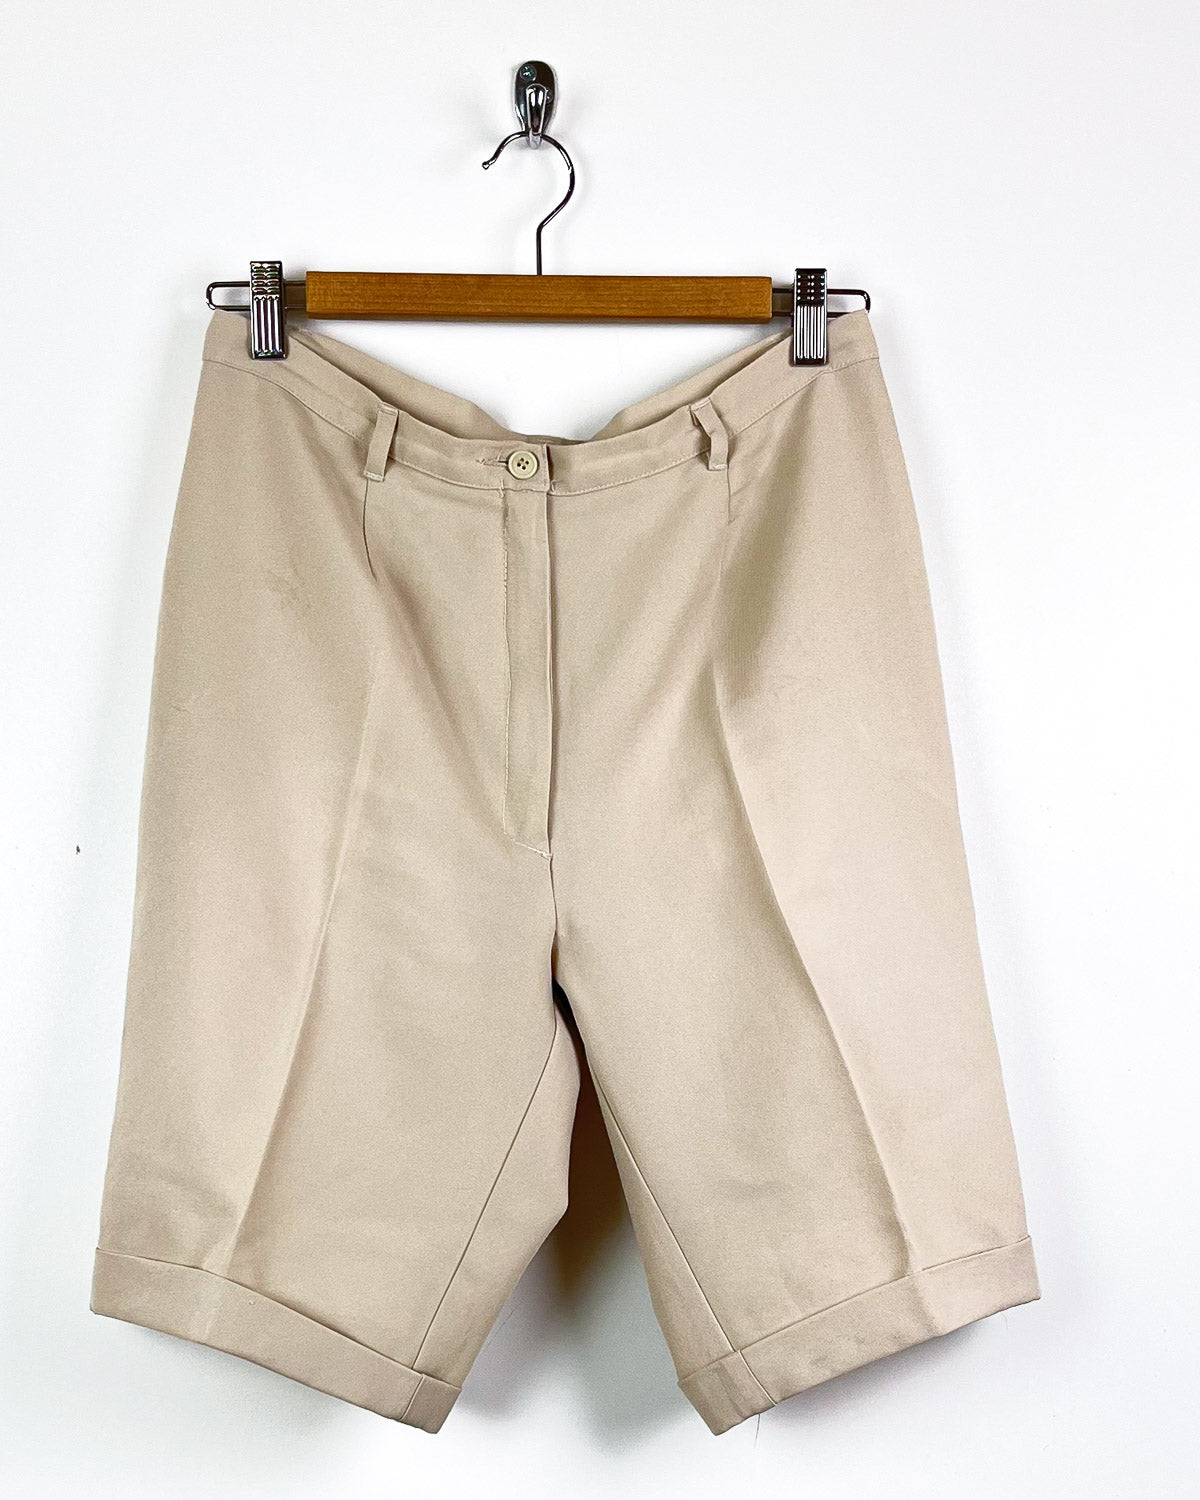 Benetton - Shorts Vintage Taglia XL